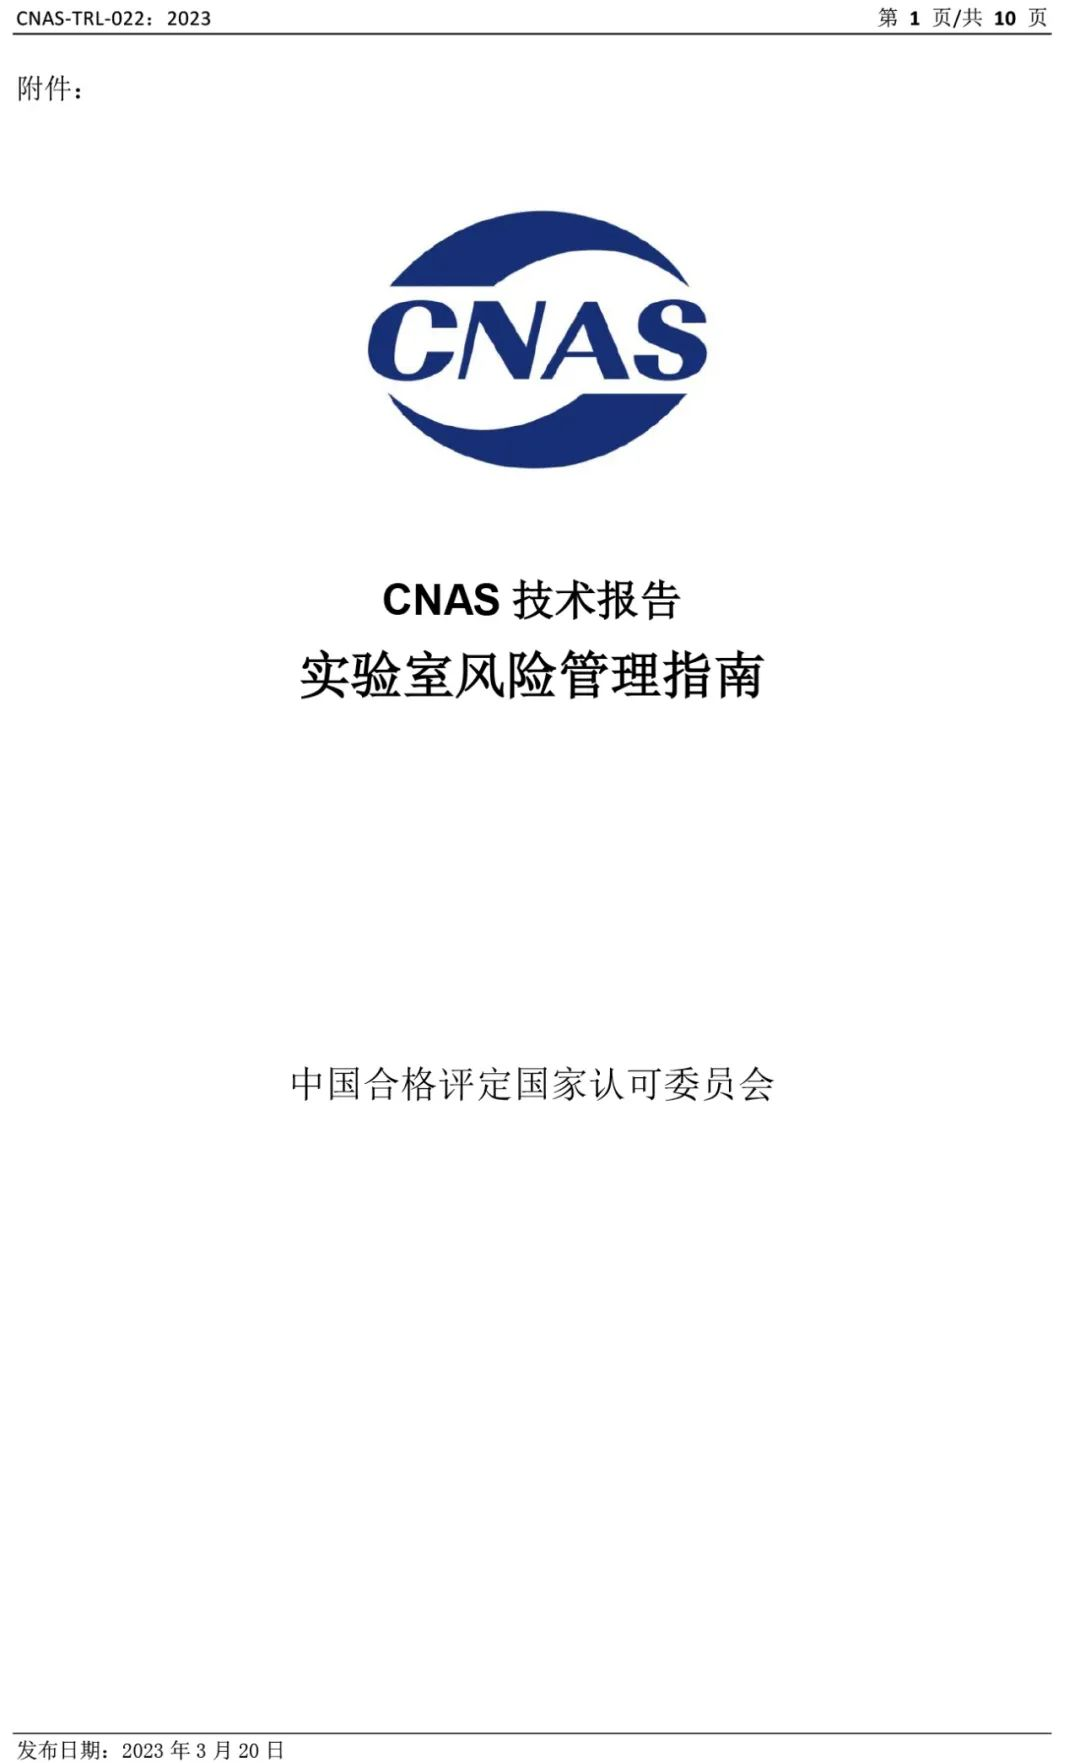 CNAS发布《实验室风险管理指南》